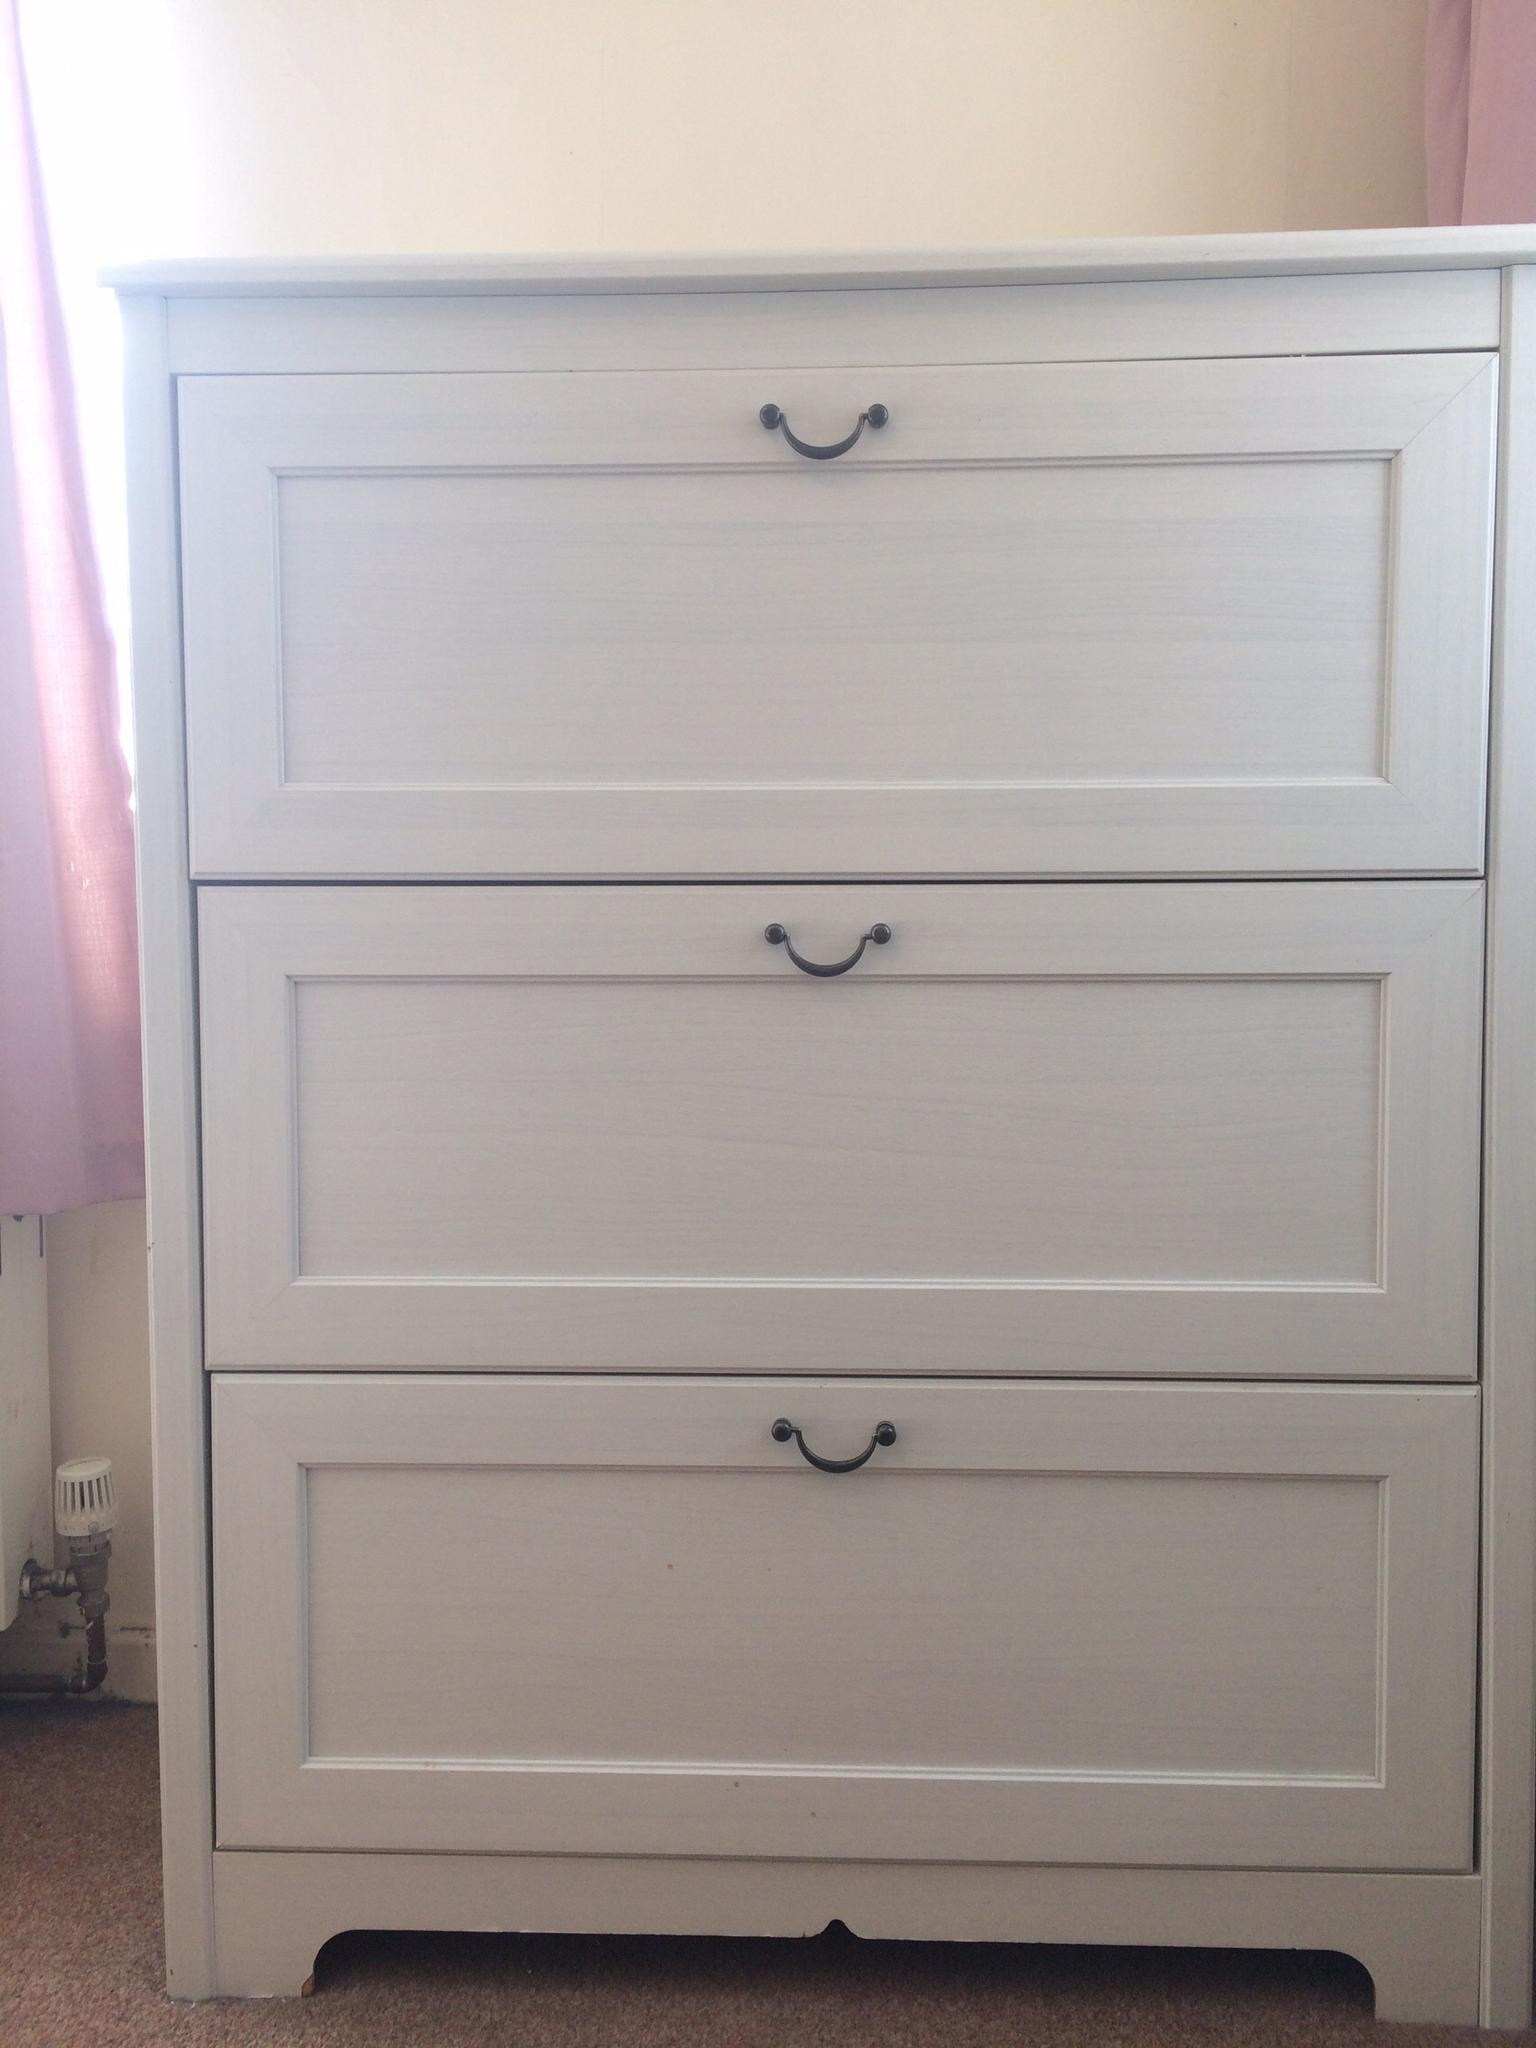 Ikea Aspelund 3 Drawer Dresser White In Se26 London For 45 00 For